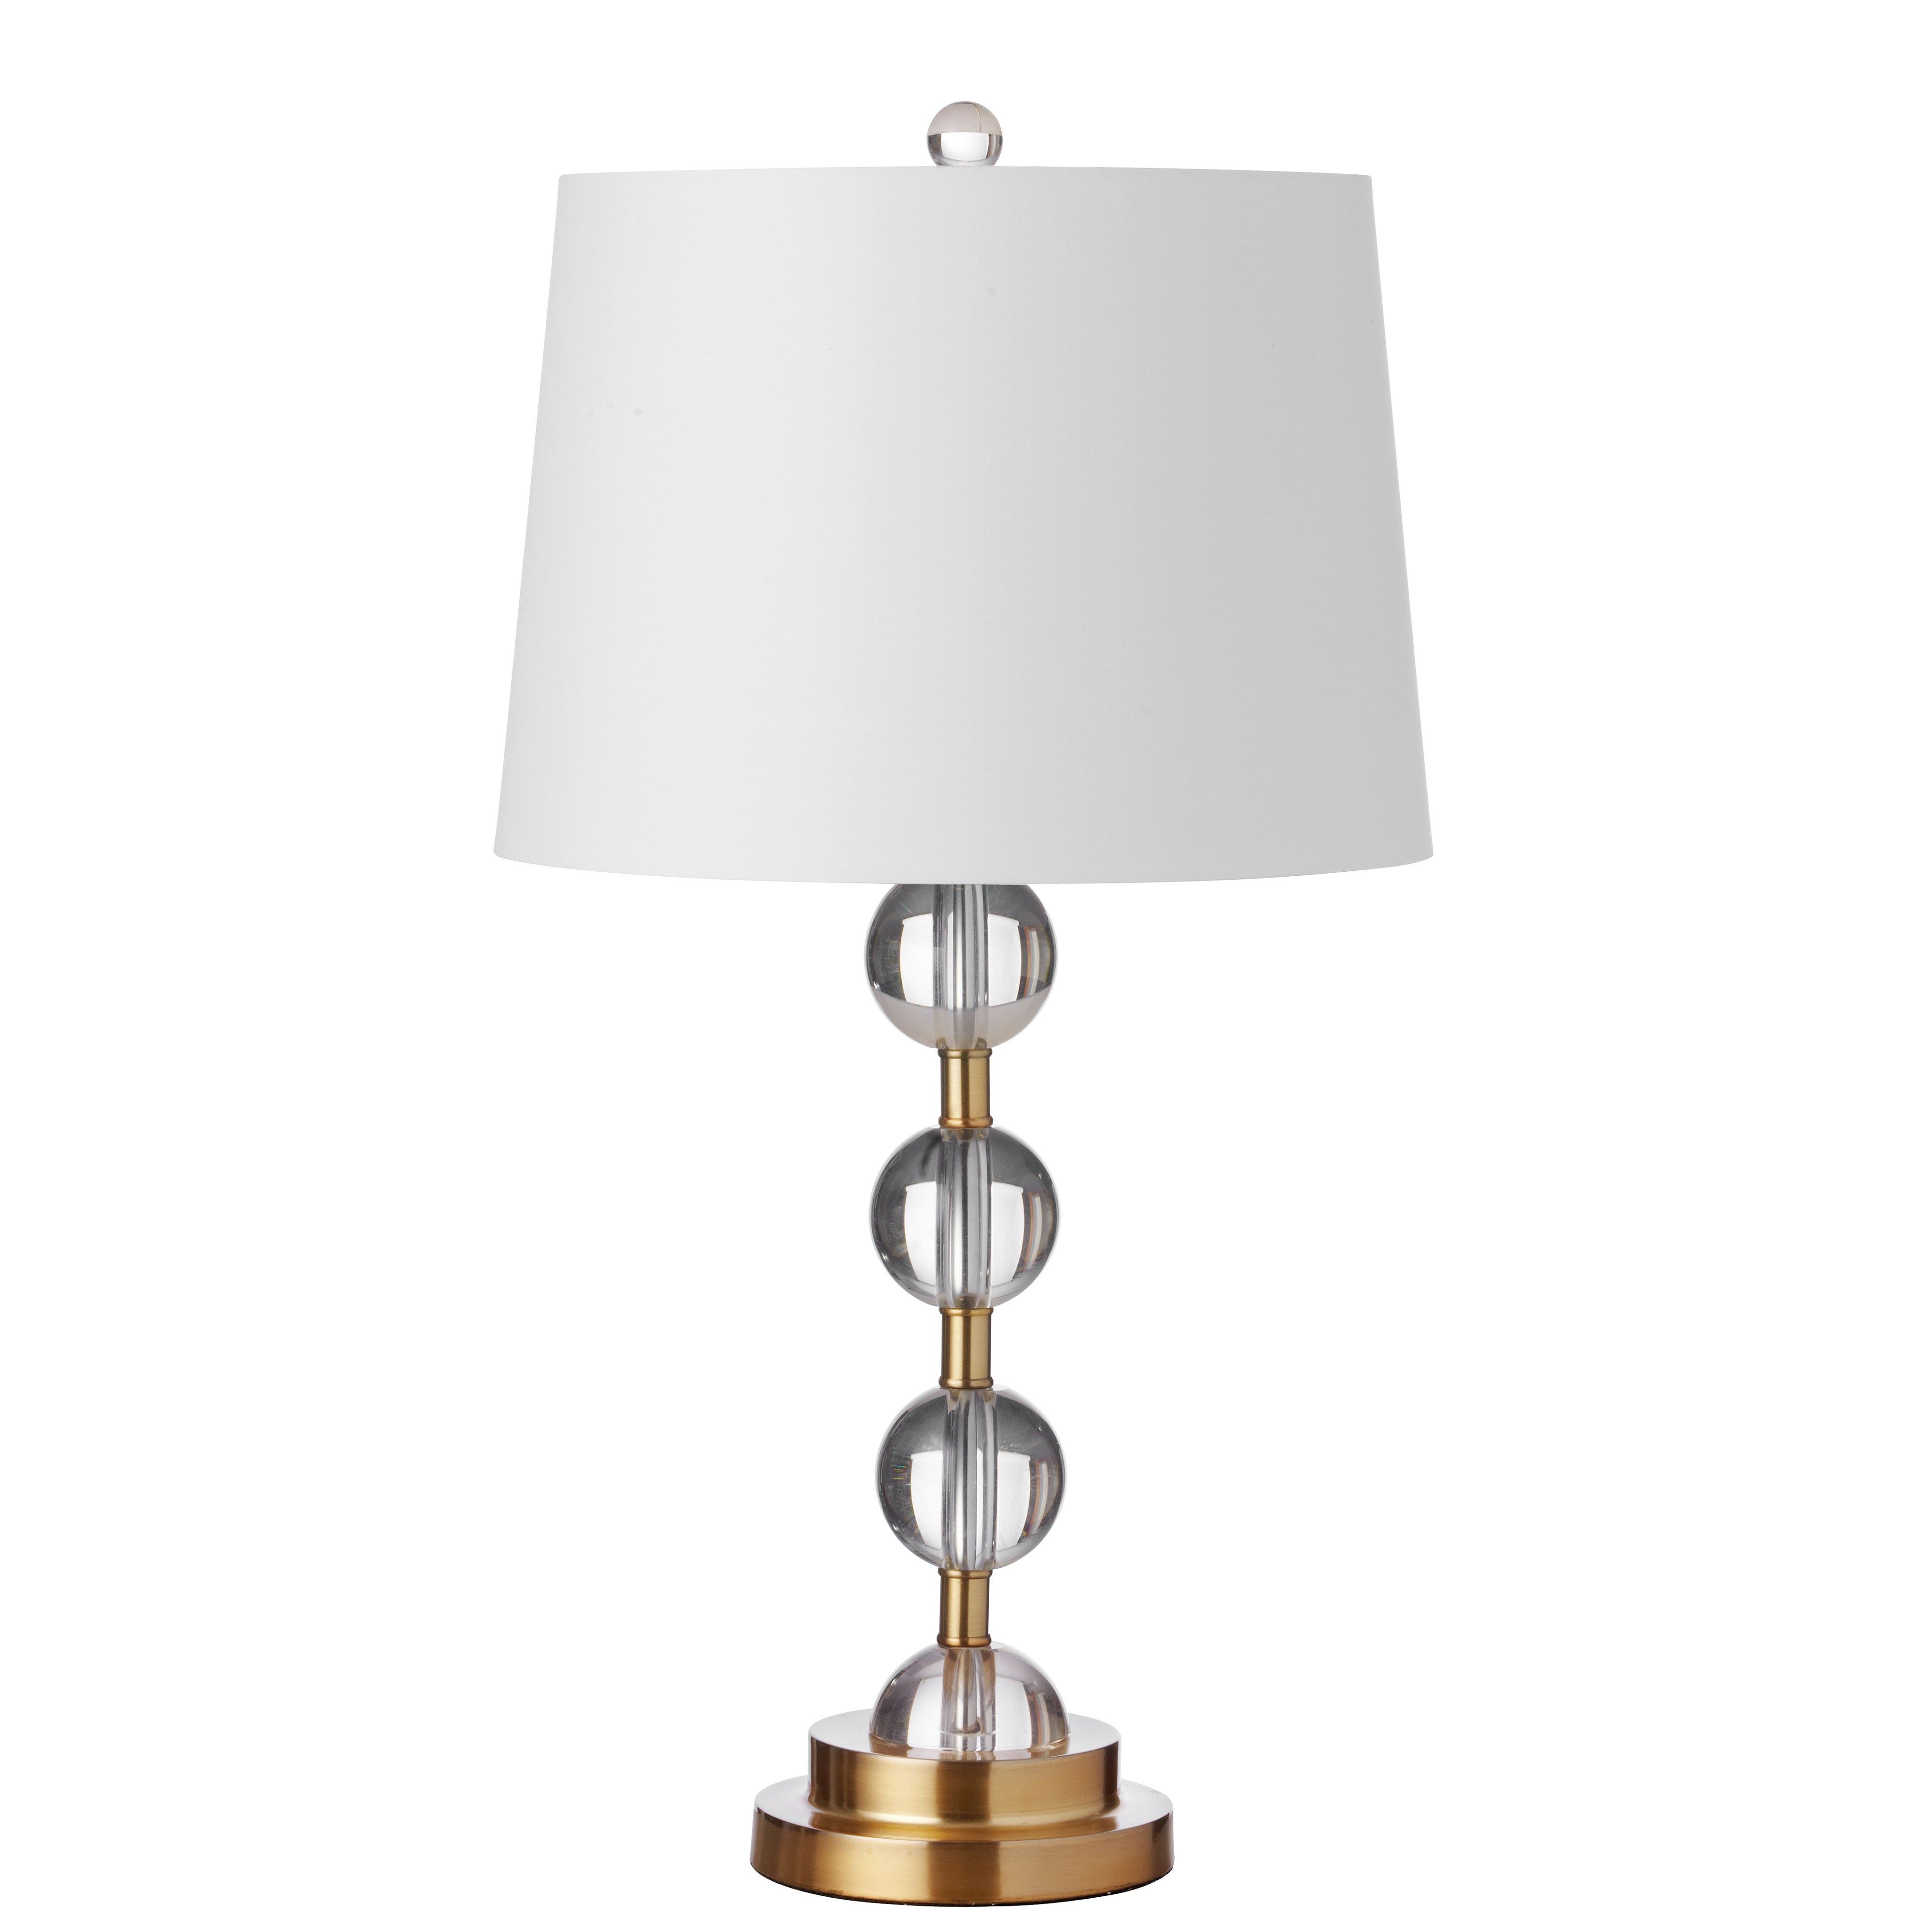 Table lamp Gold - C182T-AGB | DAINOLITE